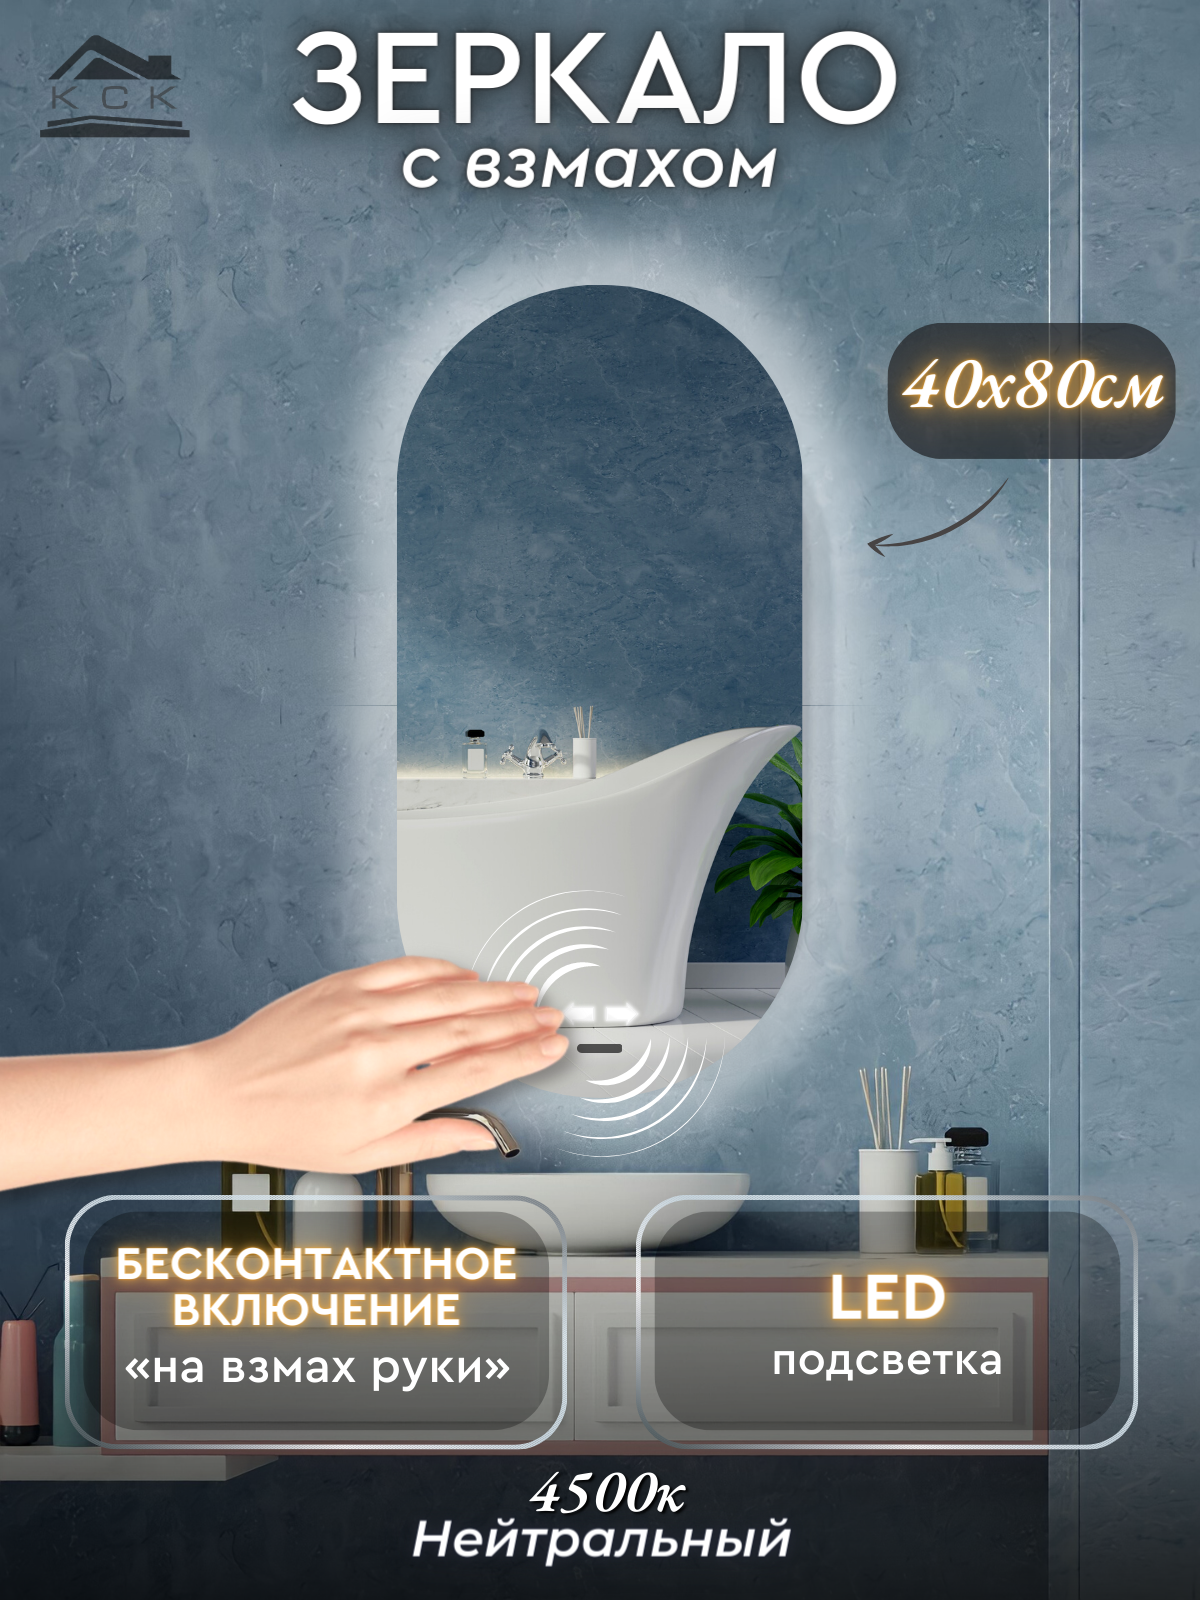 Зеркало с подсветкой для ванной на взмах руки (подсветка 4500К - нейтральный свет) овальное размер 40х80 см.